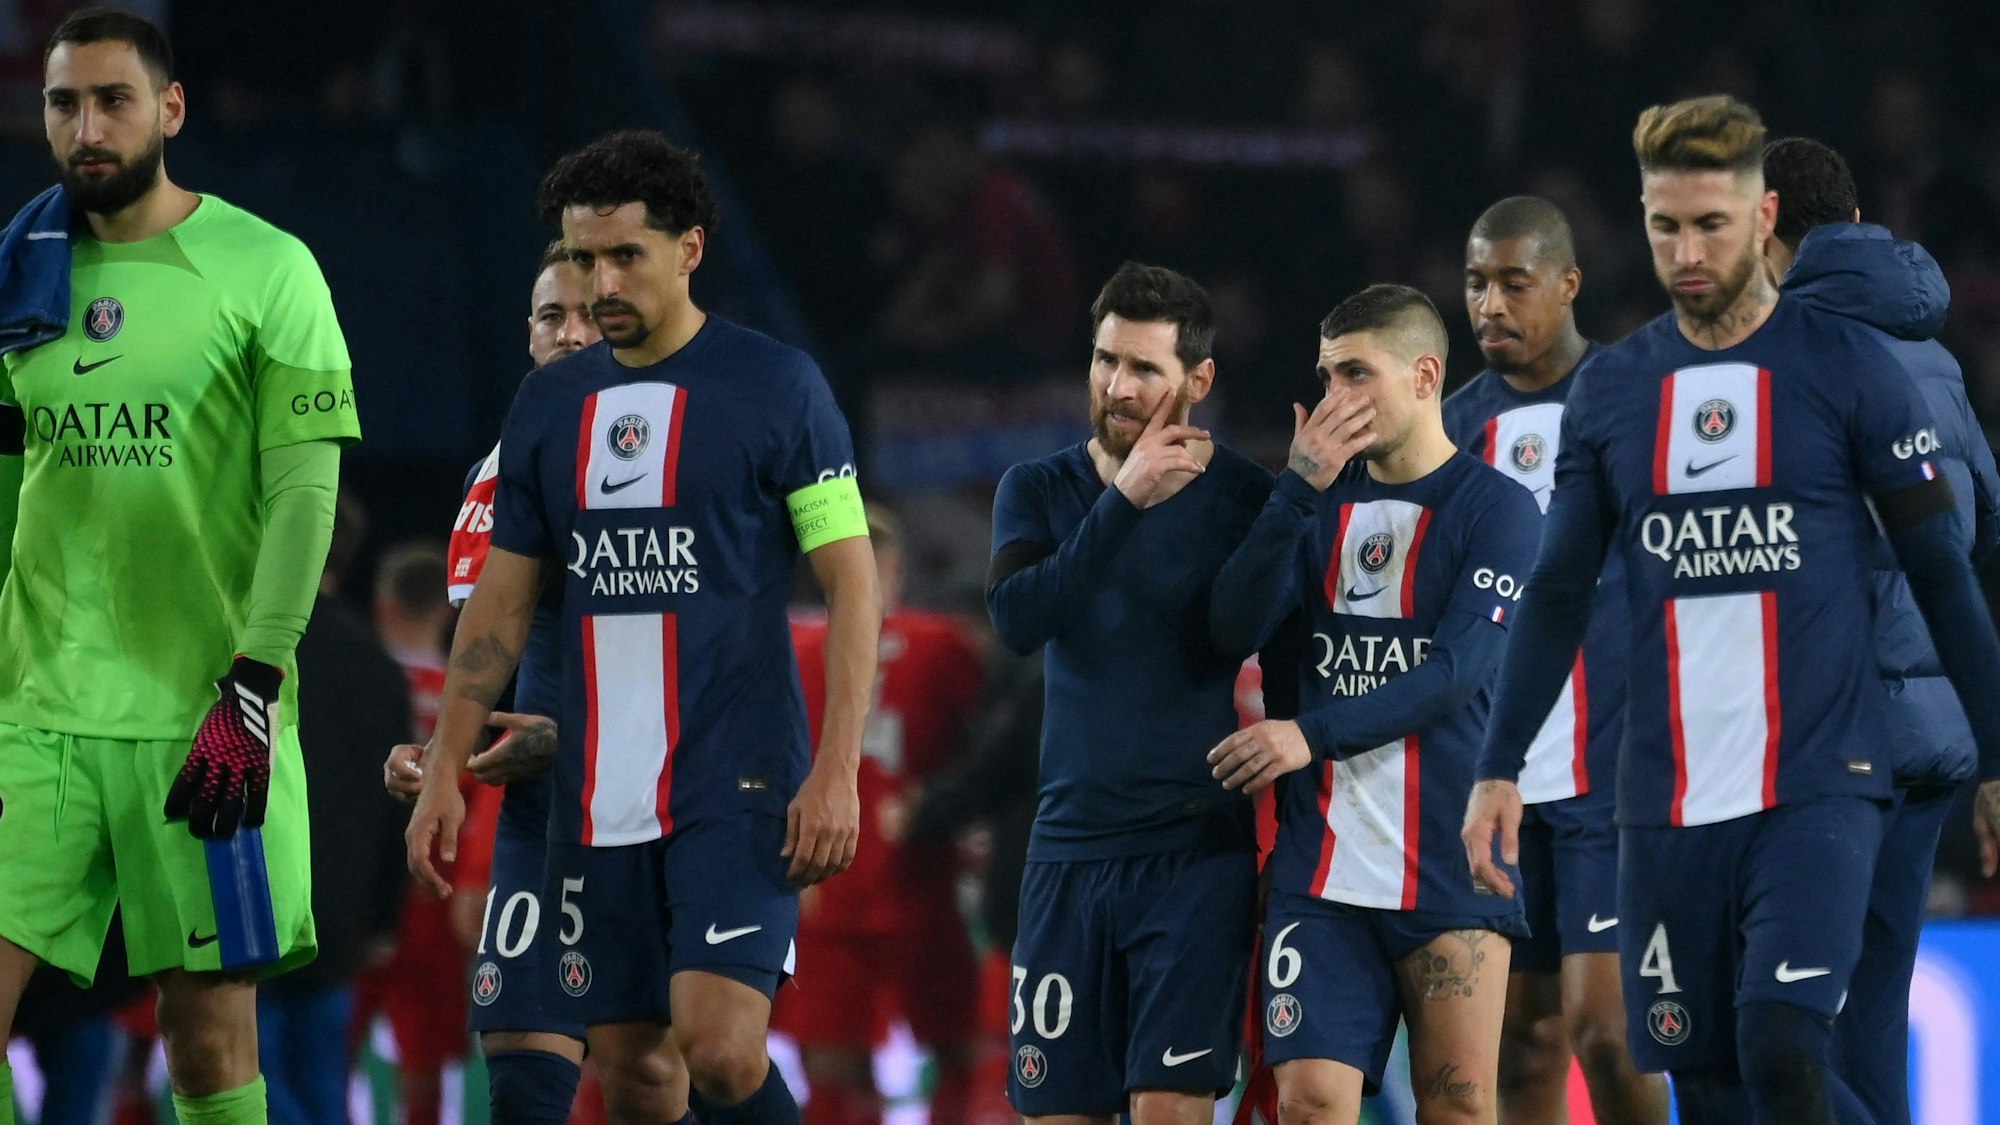 Die Stars von Paris Saint-Germain gehen nach einer Niederlage enttäuscht vom Platz.